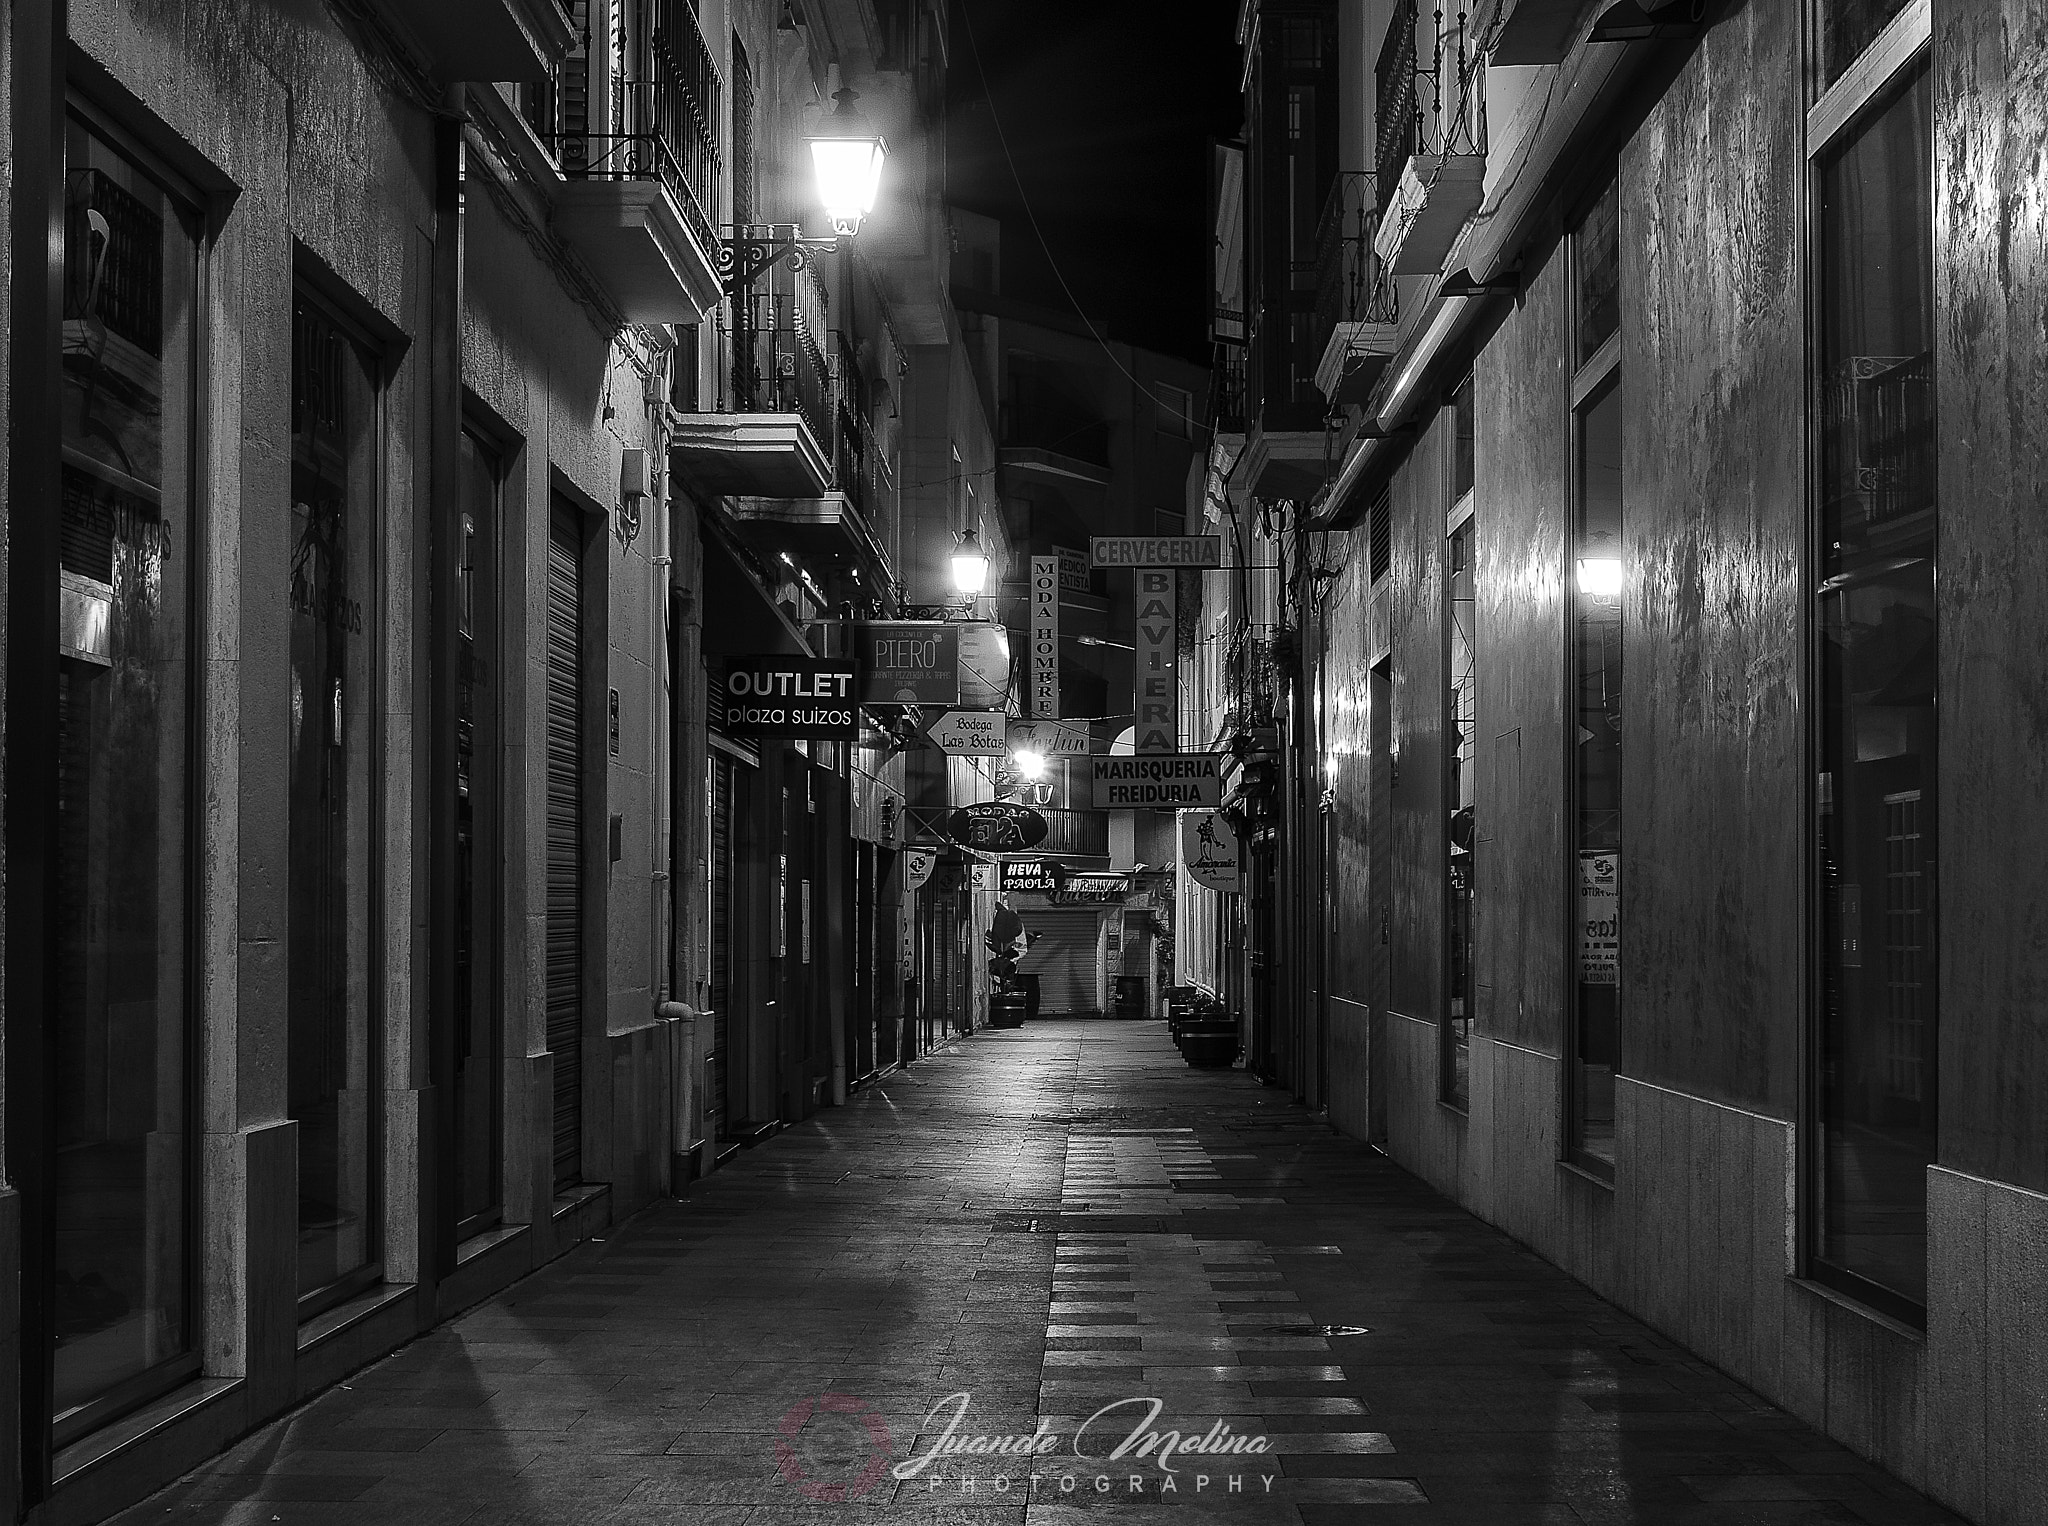 Nikon D7000 sample photo. La ciudad dormida. the sleeping city photography